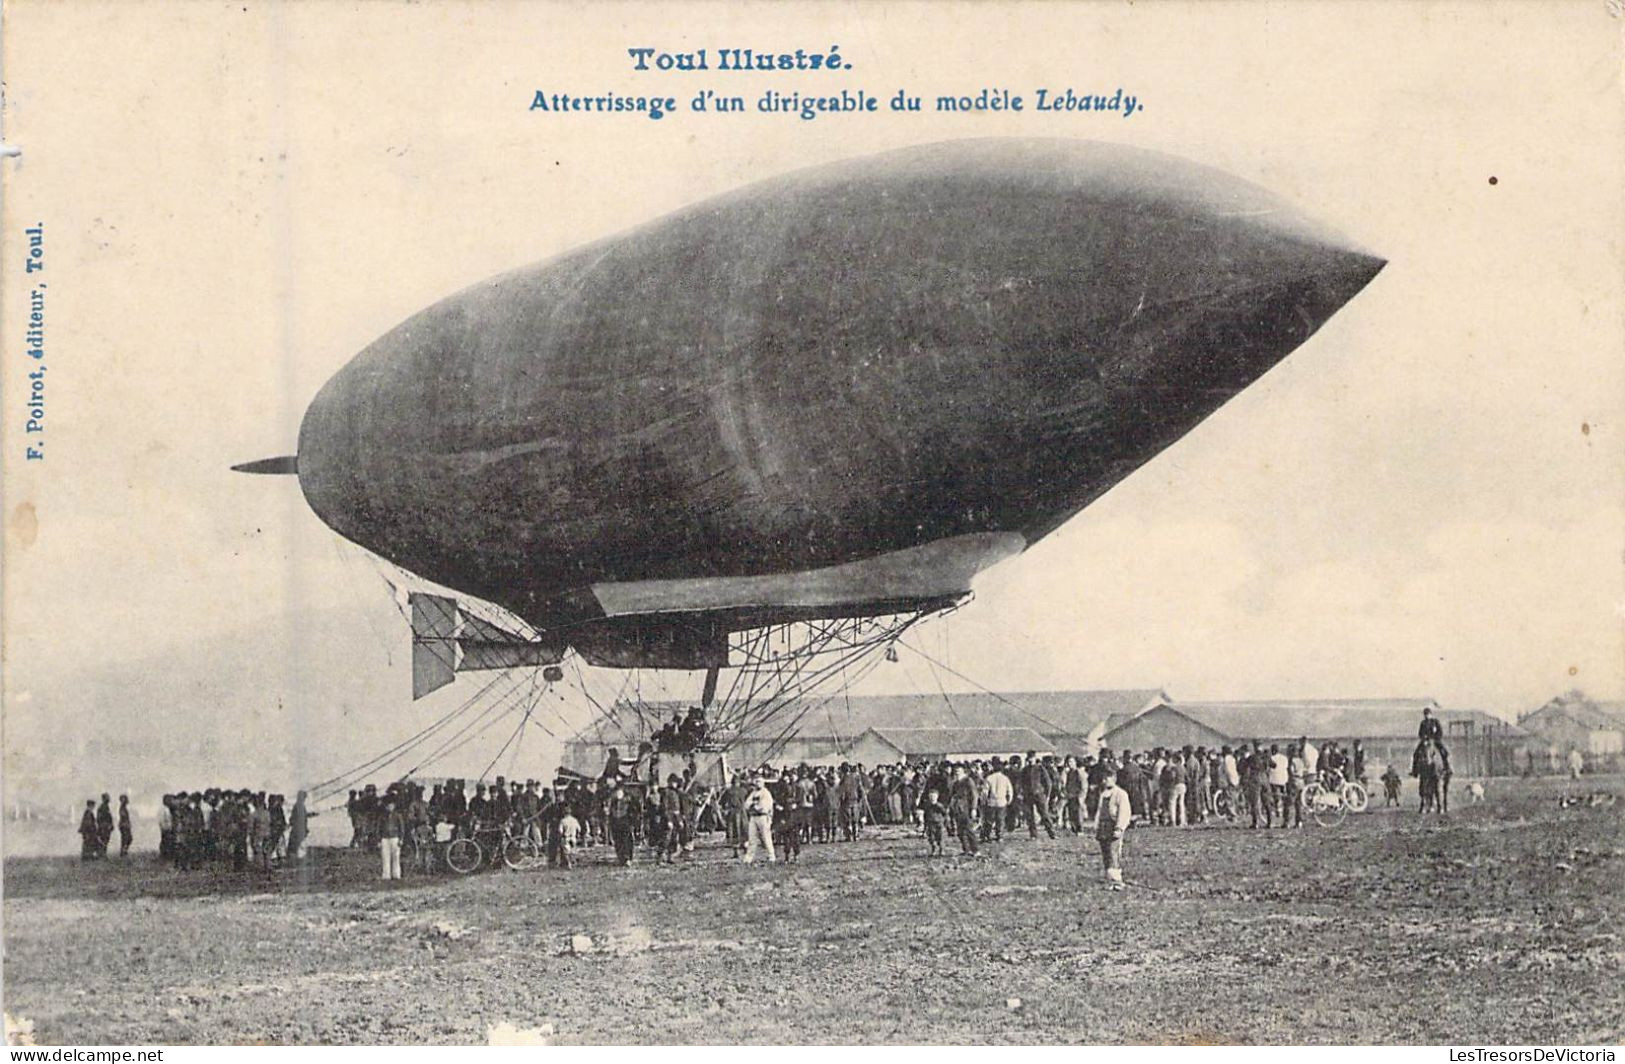 DIRIGEABLES - Toul Illustrée - Atterrissage D'un Dirigeable Modèle Lebaudy - Editeur F Poirot - Carte Postale Ancienne - Zeppeline